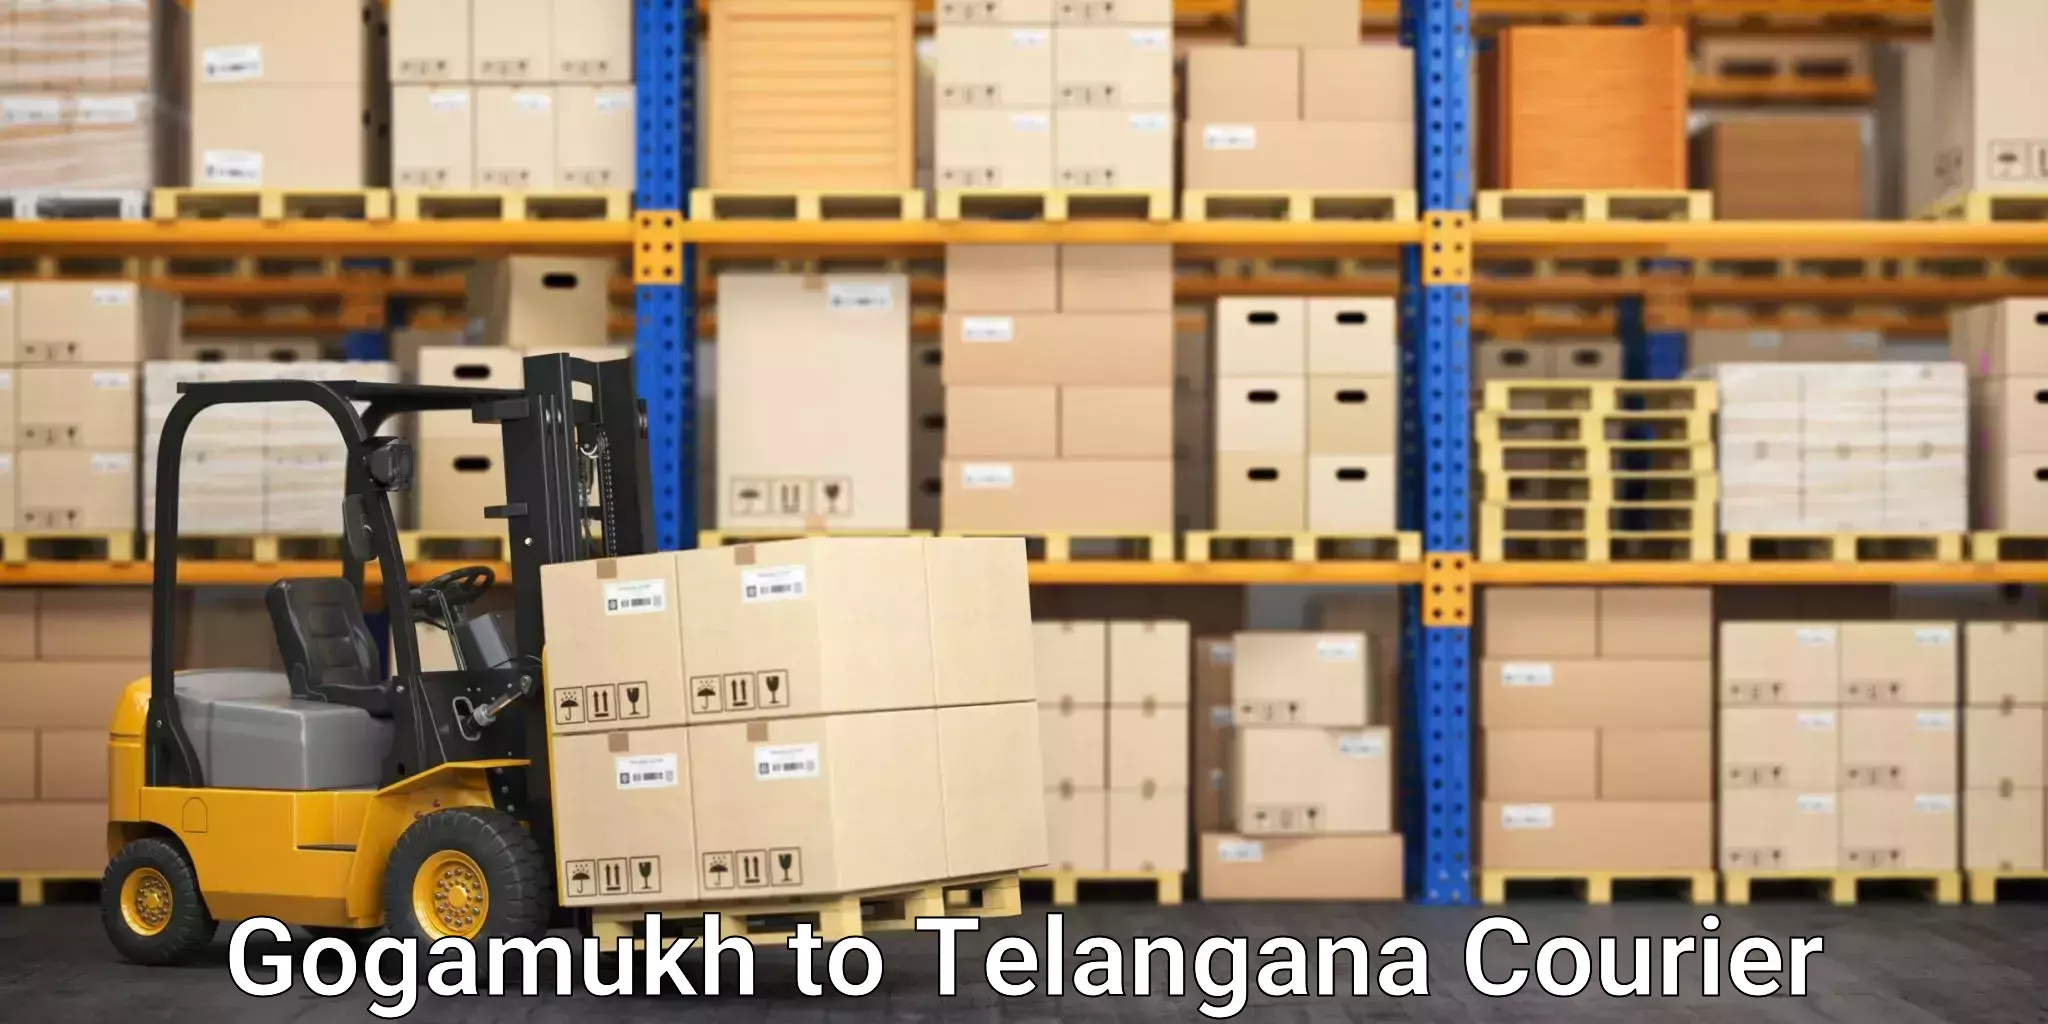 Reliable logistics providers Gogamukh to Ramagundam